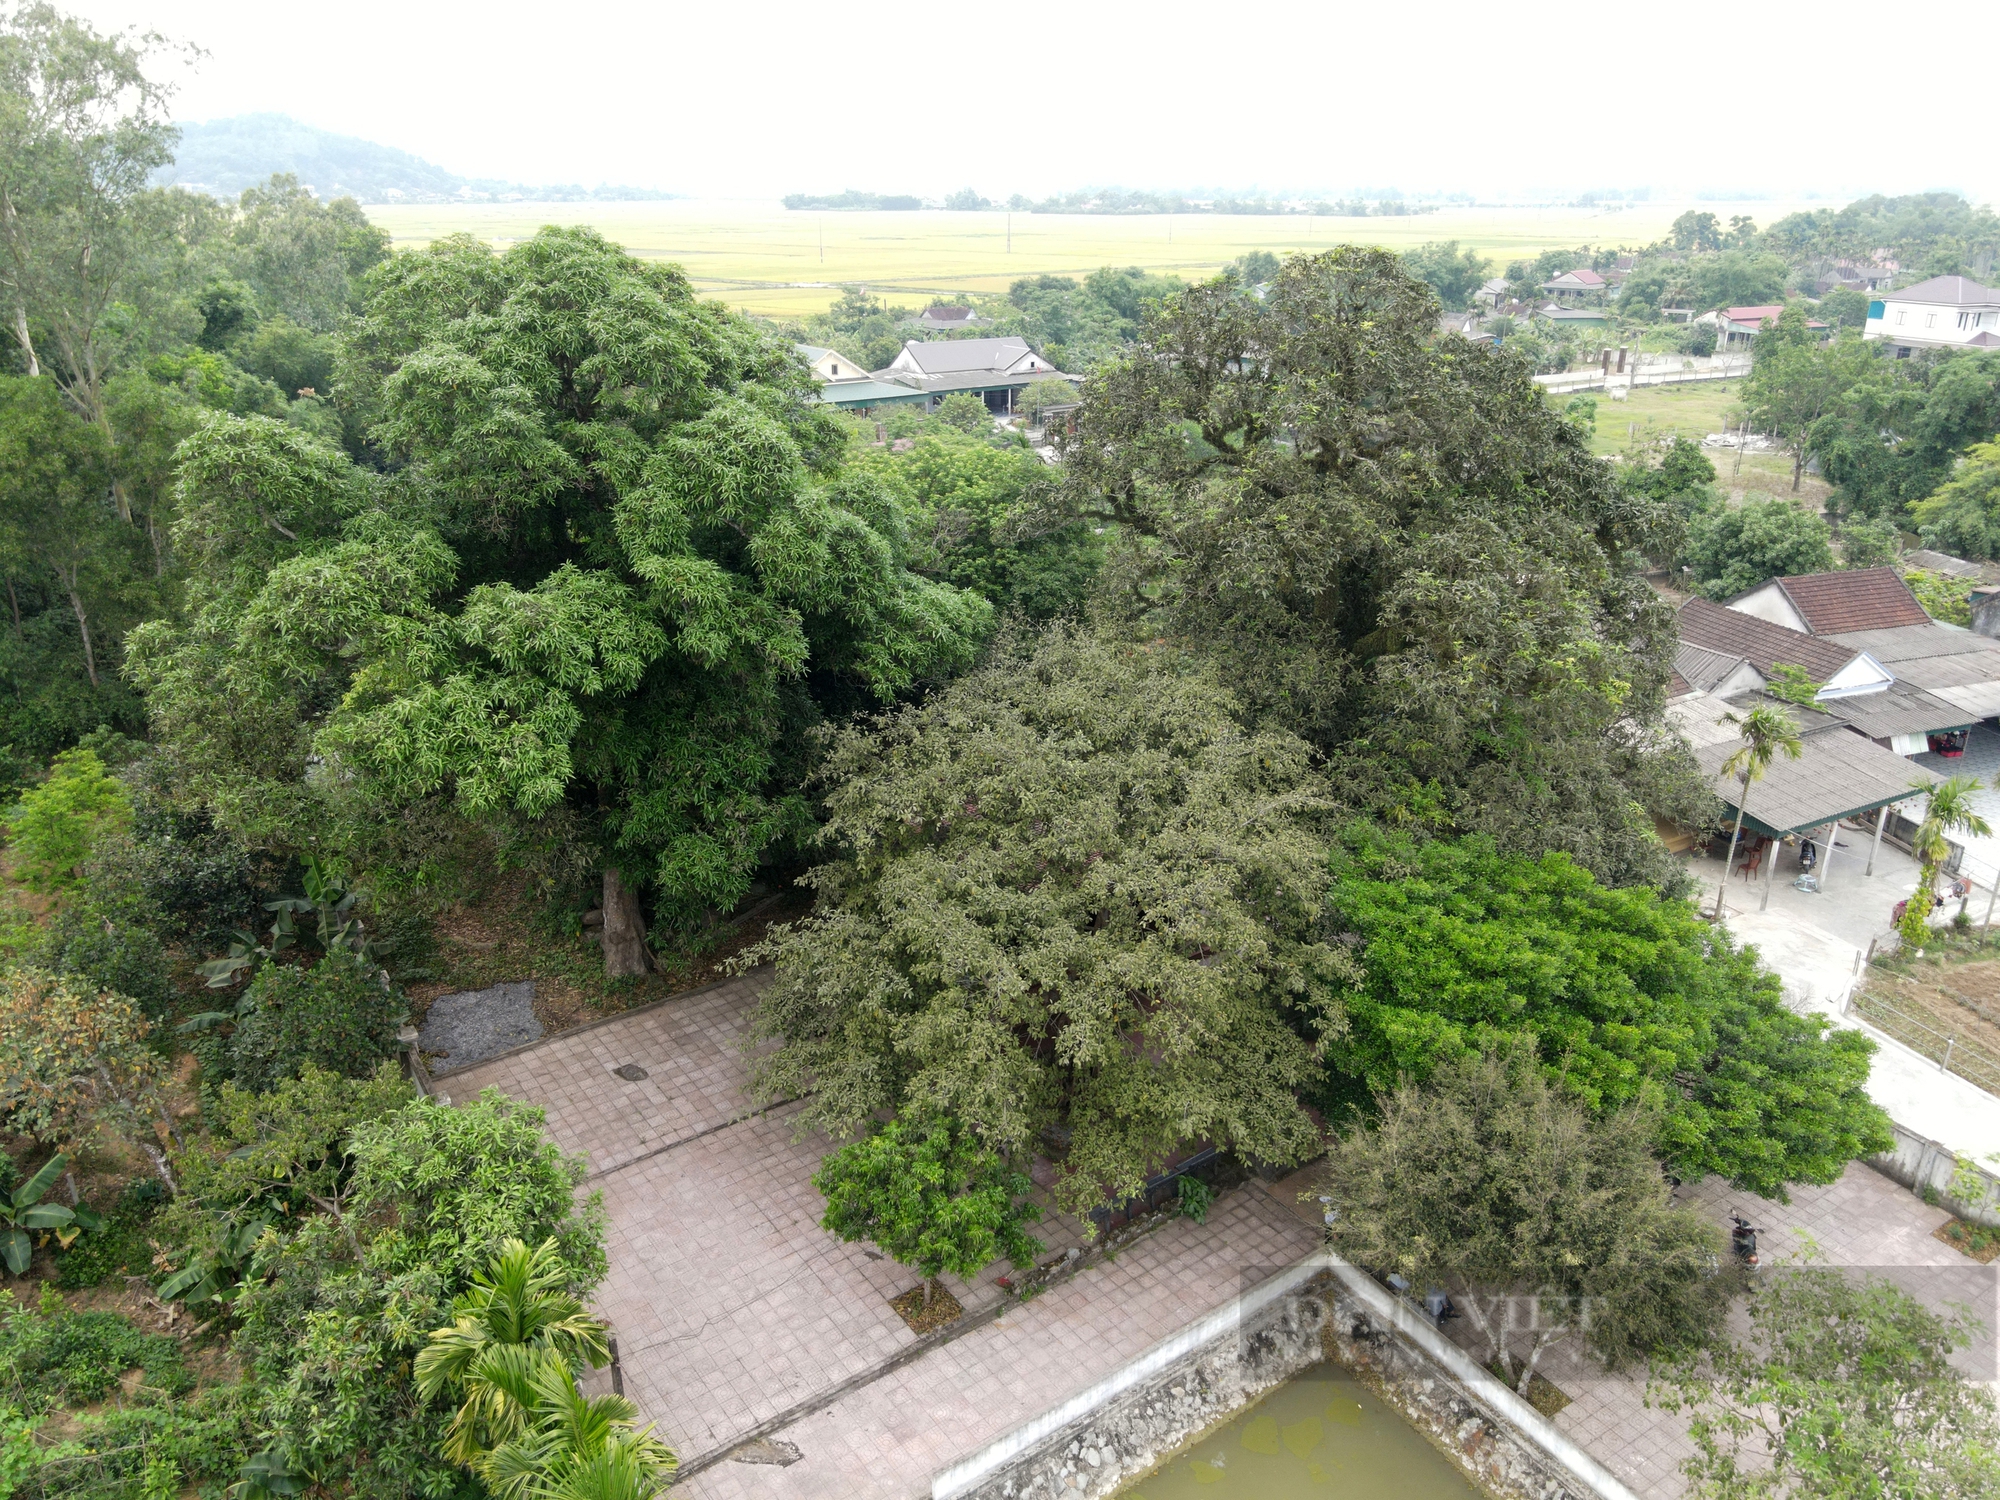 Ở một thị trấn của Hà Tĩnh có 2 cây cổ thụ 600 tuổi "trấn" cửa đền Cương Quốc Công Nguyễn Xí- Ảnh 4.